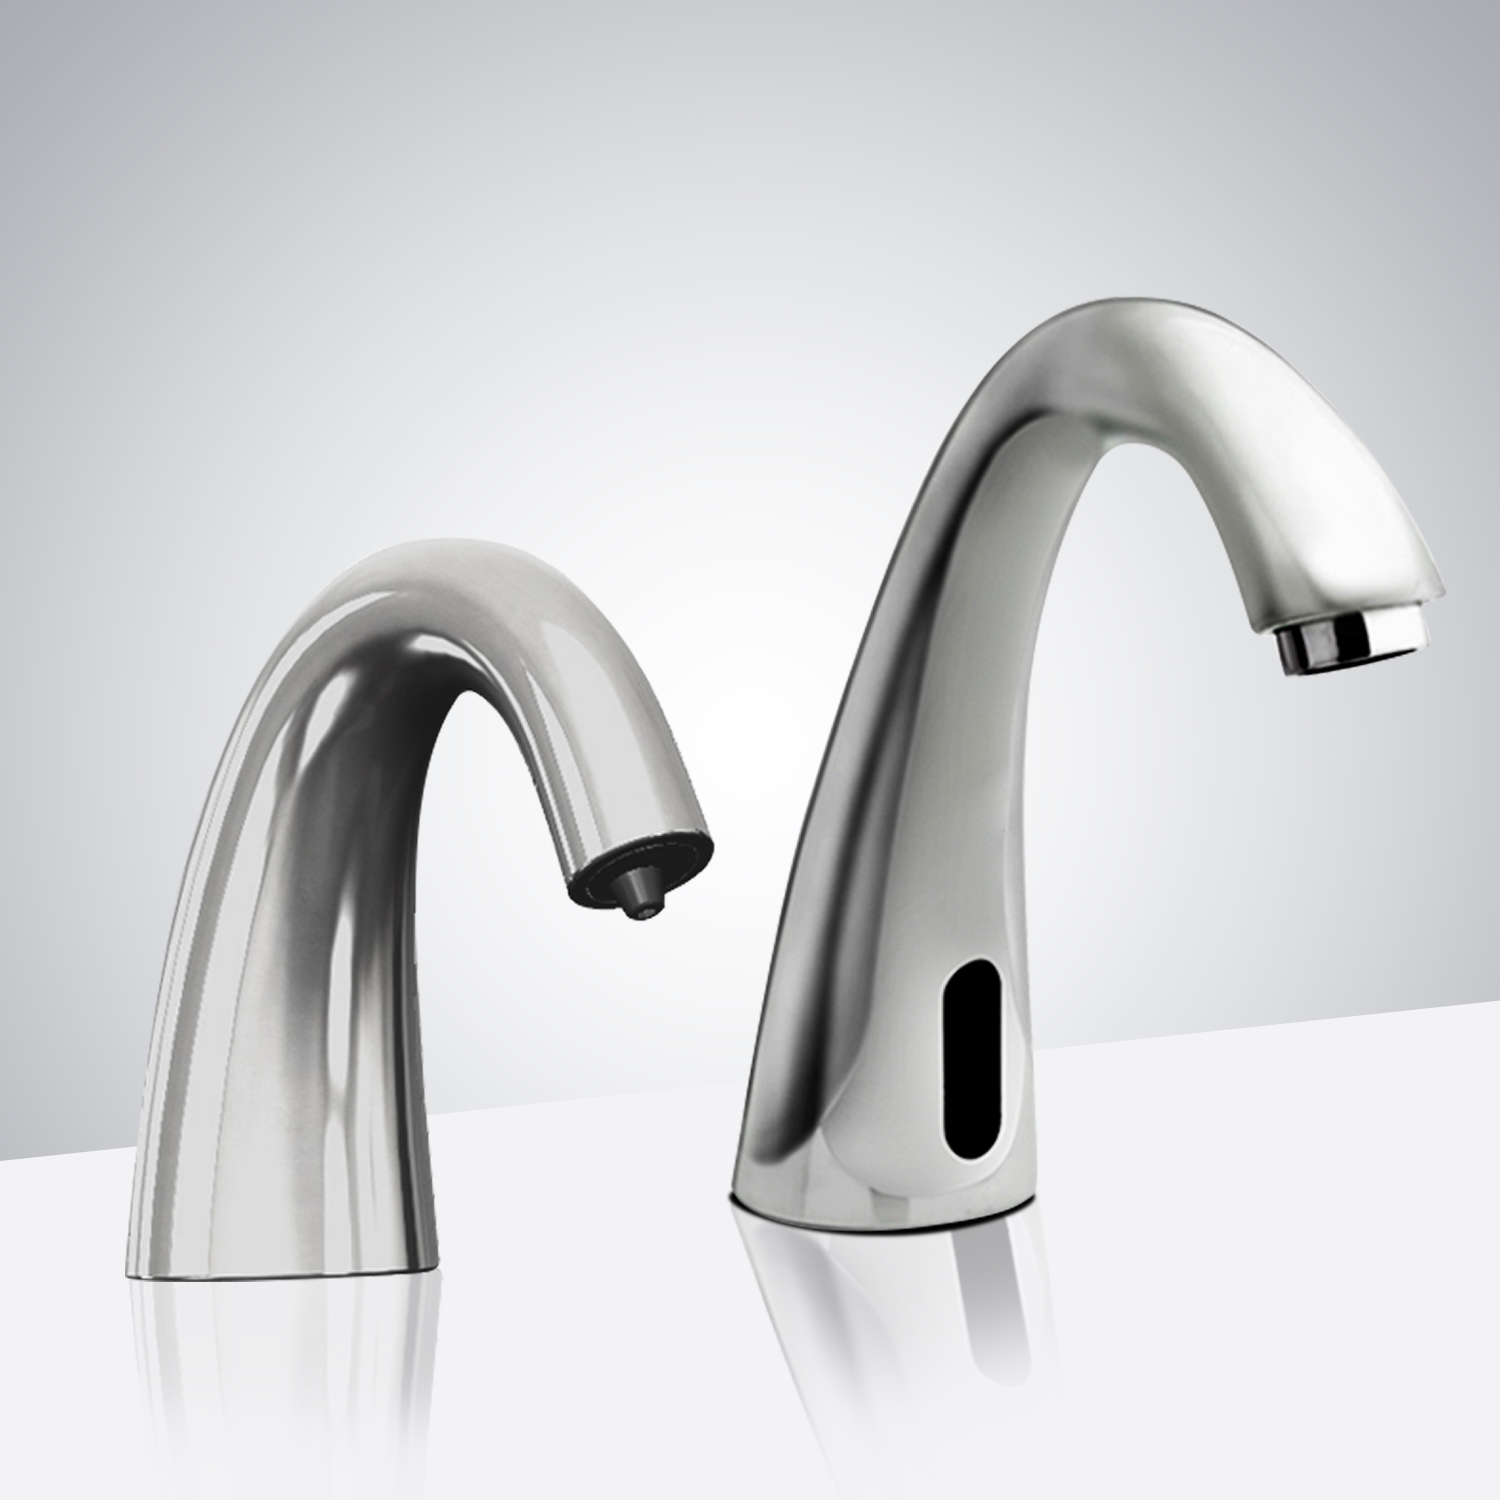 DUPLICATE Fontana Lyon Automatic Motion Sensor Faucet & Automatic Soap Dispenser for Restrooms